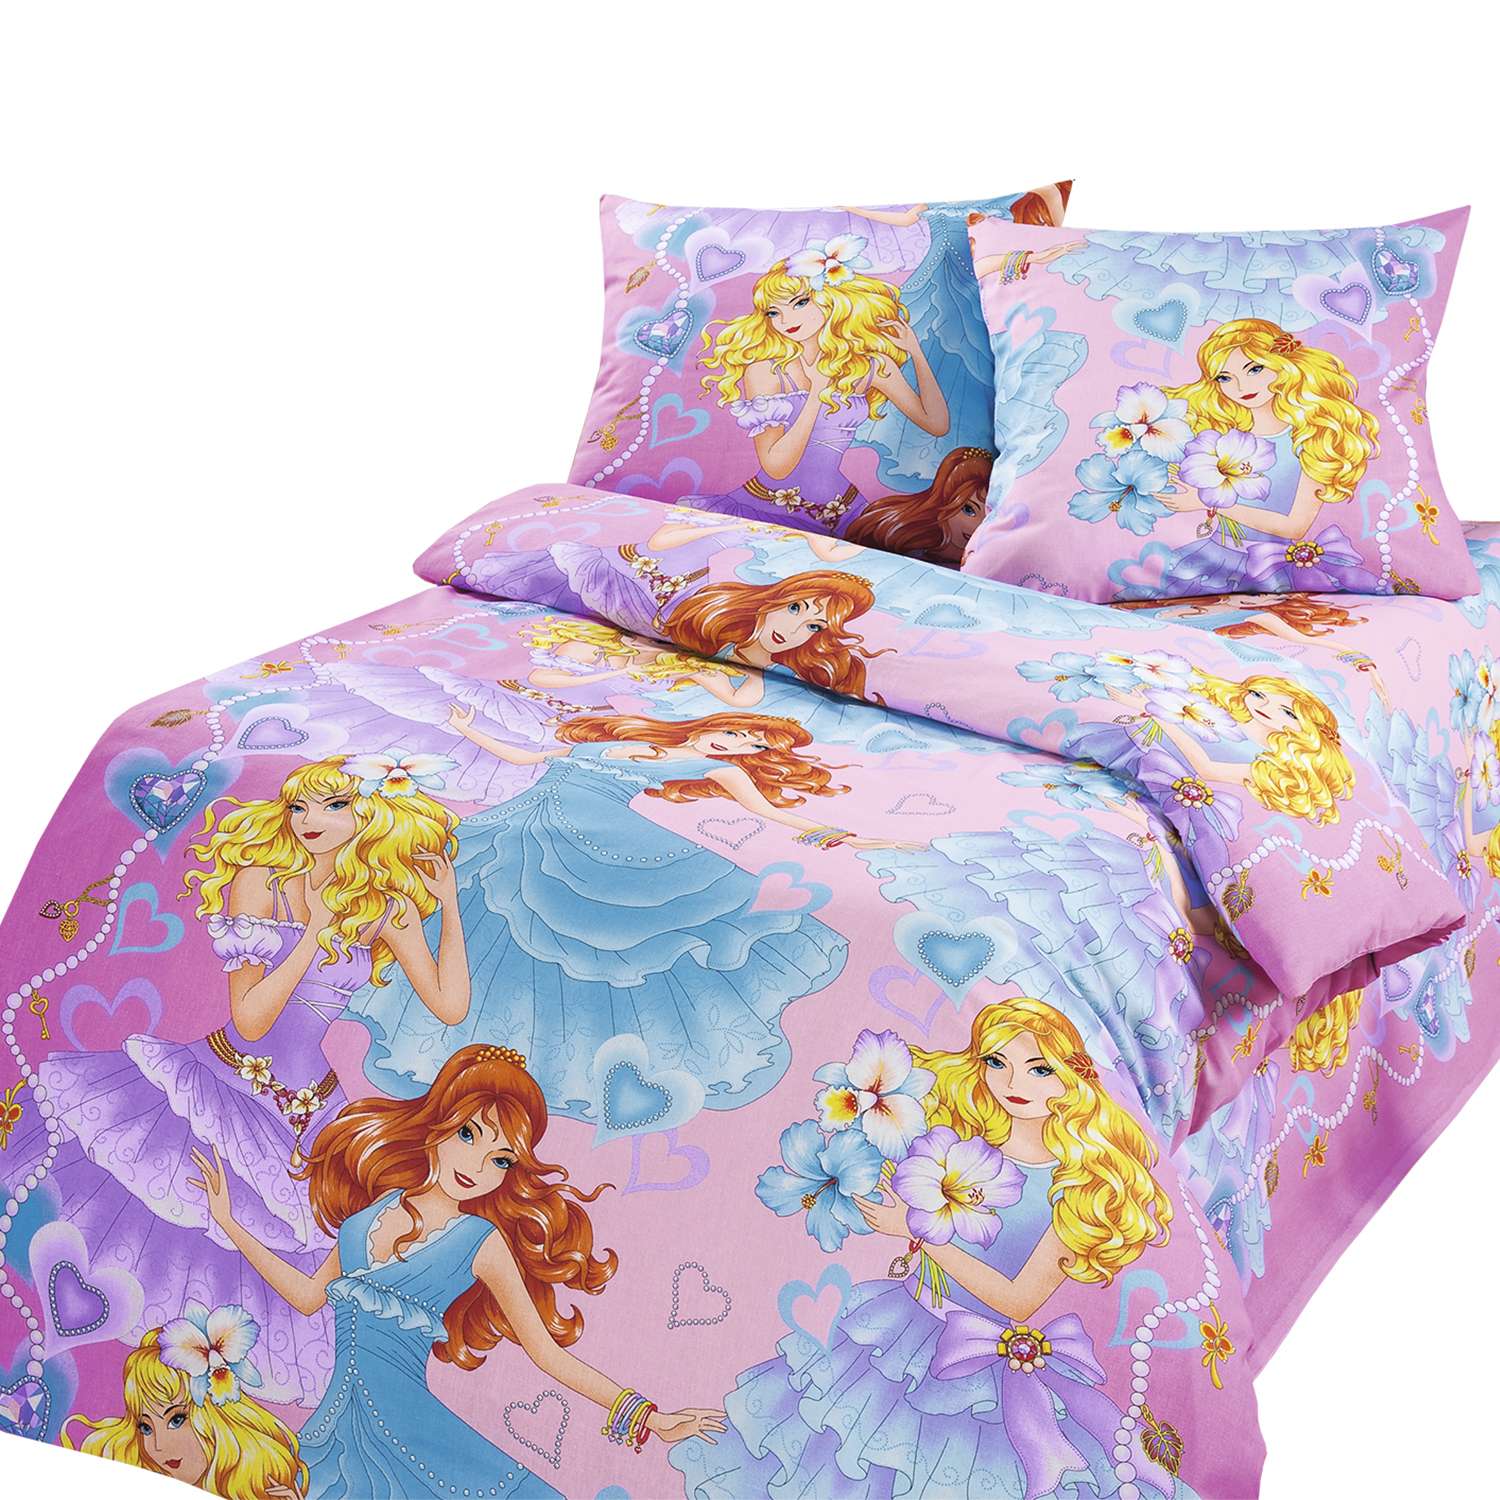 Комплект постельного белья MILANIKA Принцесса 3 предмета 1.5 спальный - фото 1